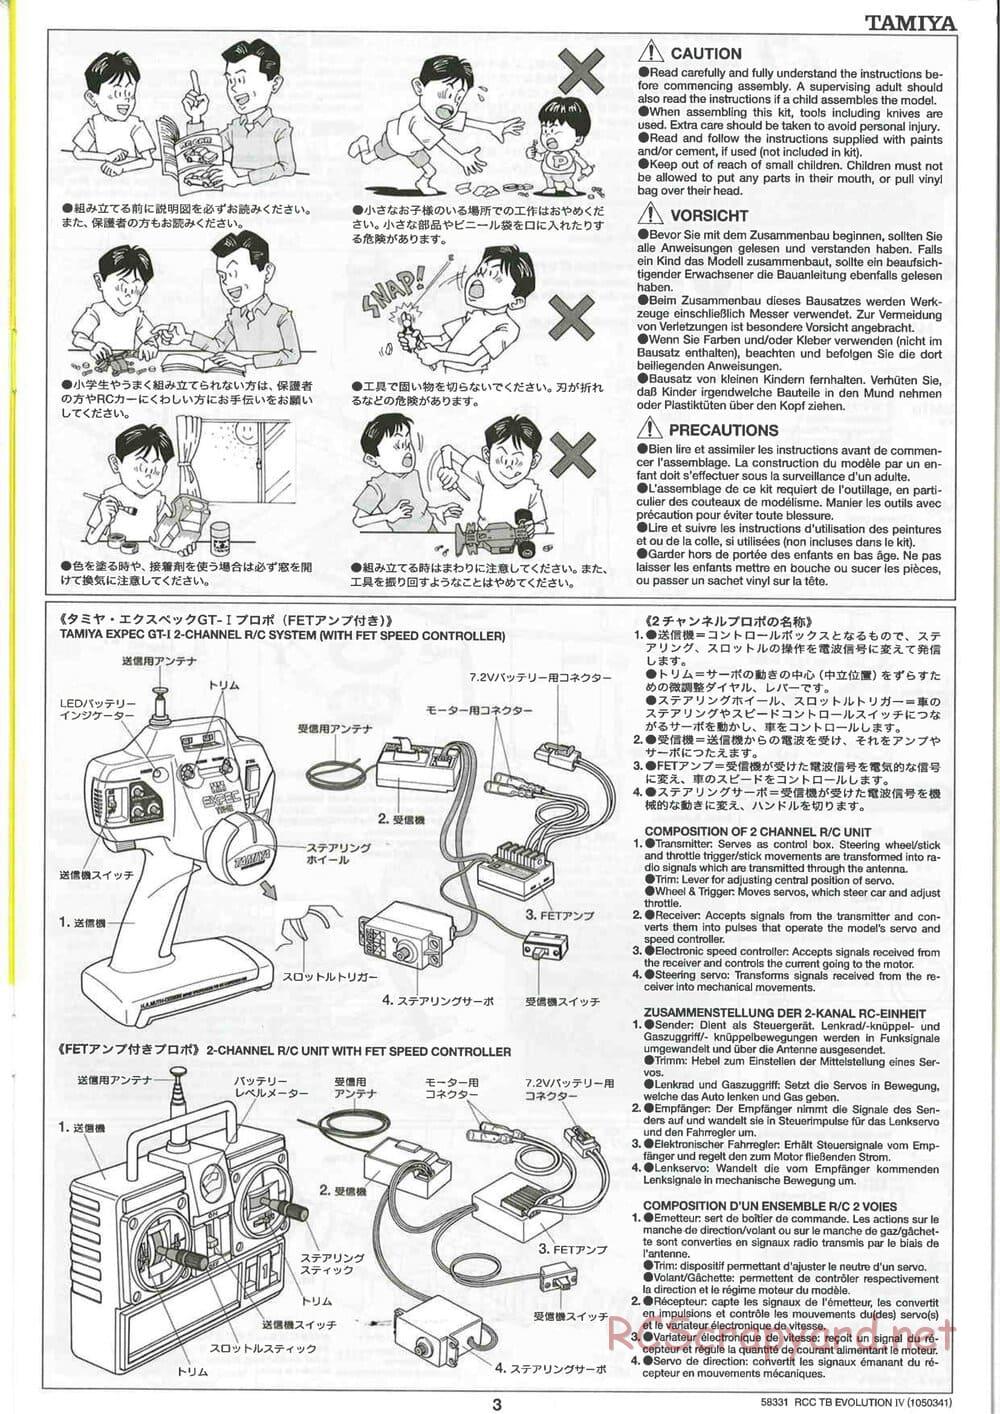 Tamiya - TB Evolution IV Chassis - Manual - Page 3